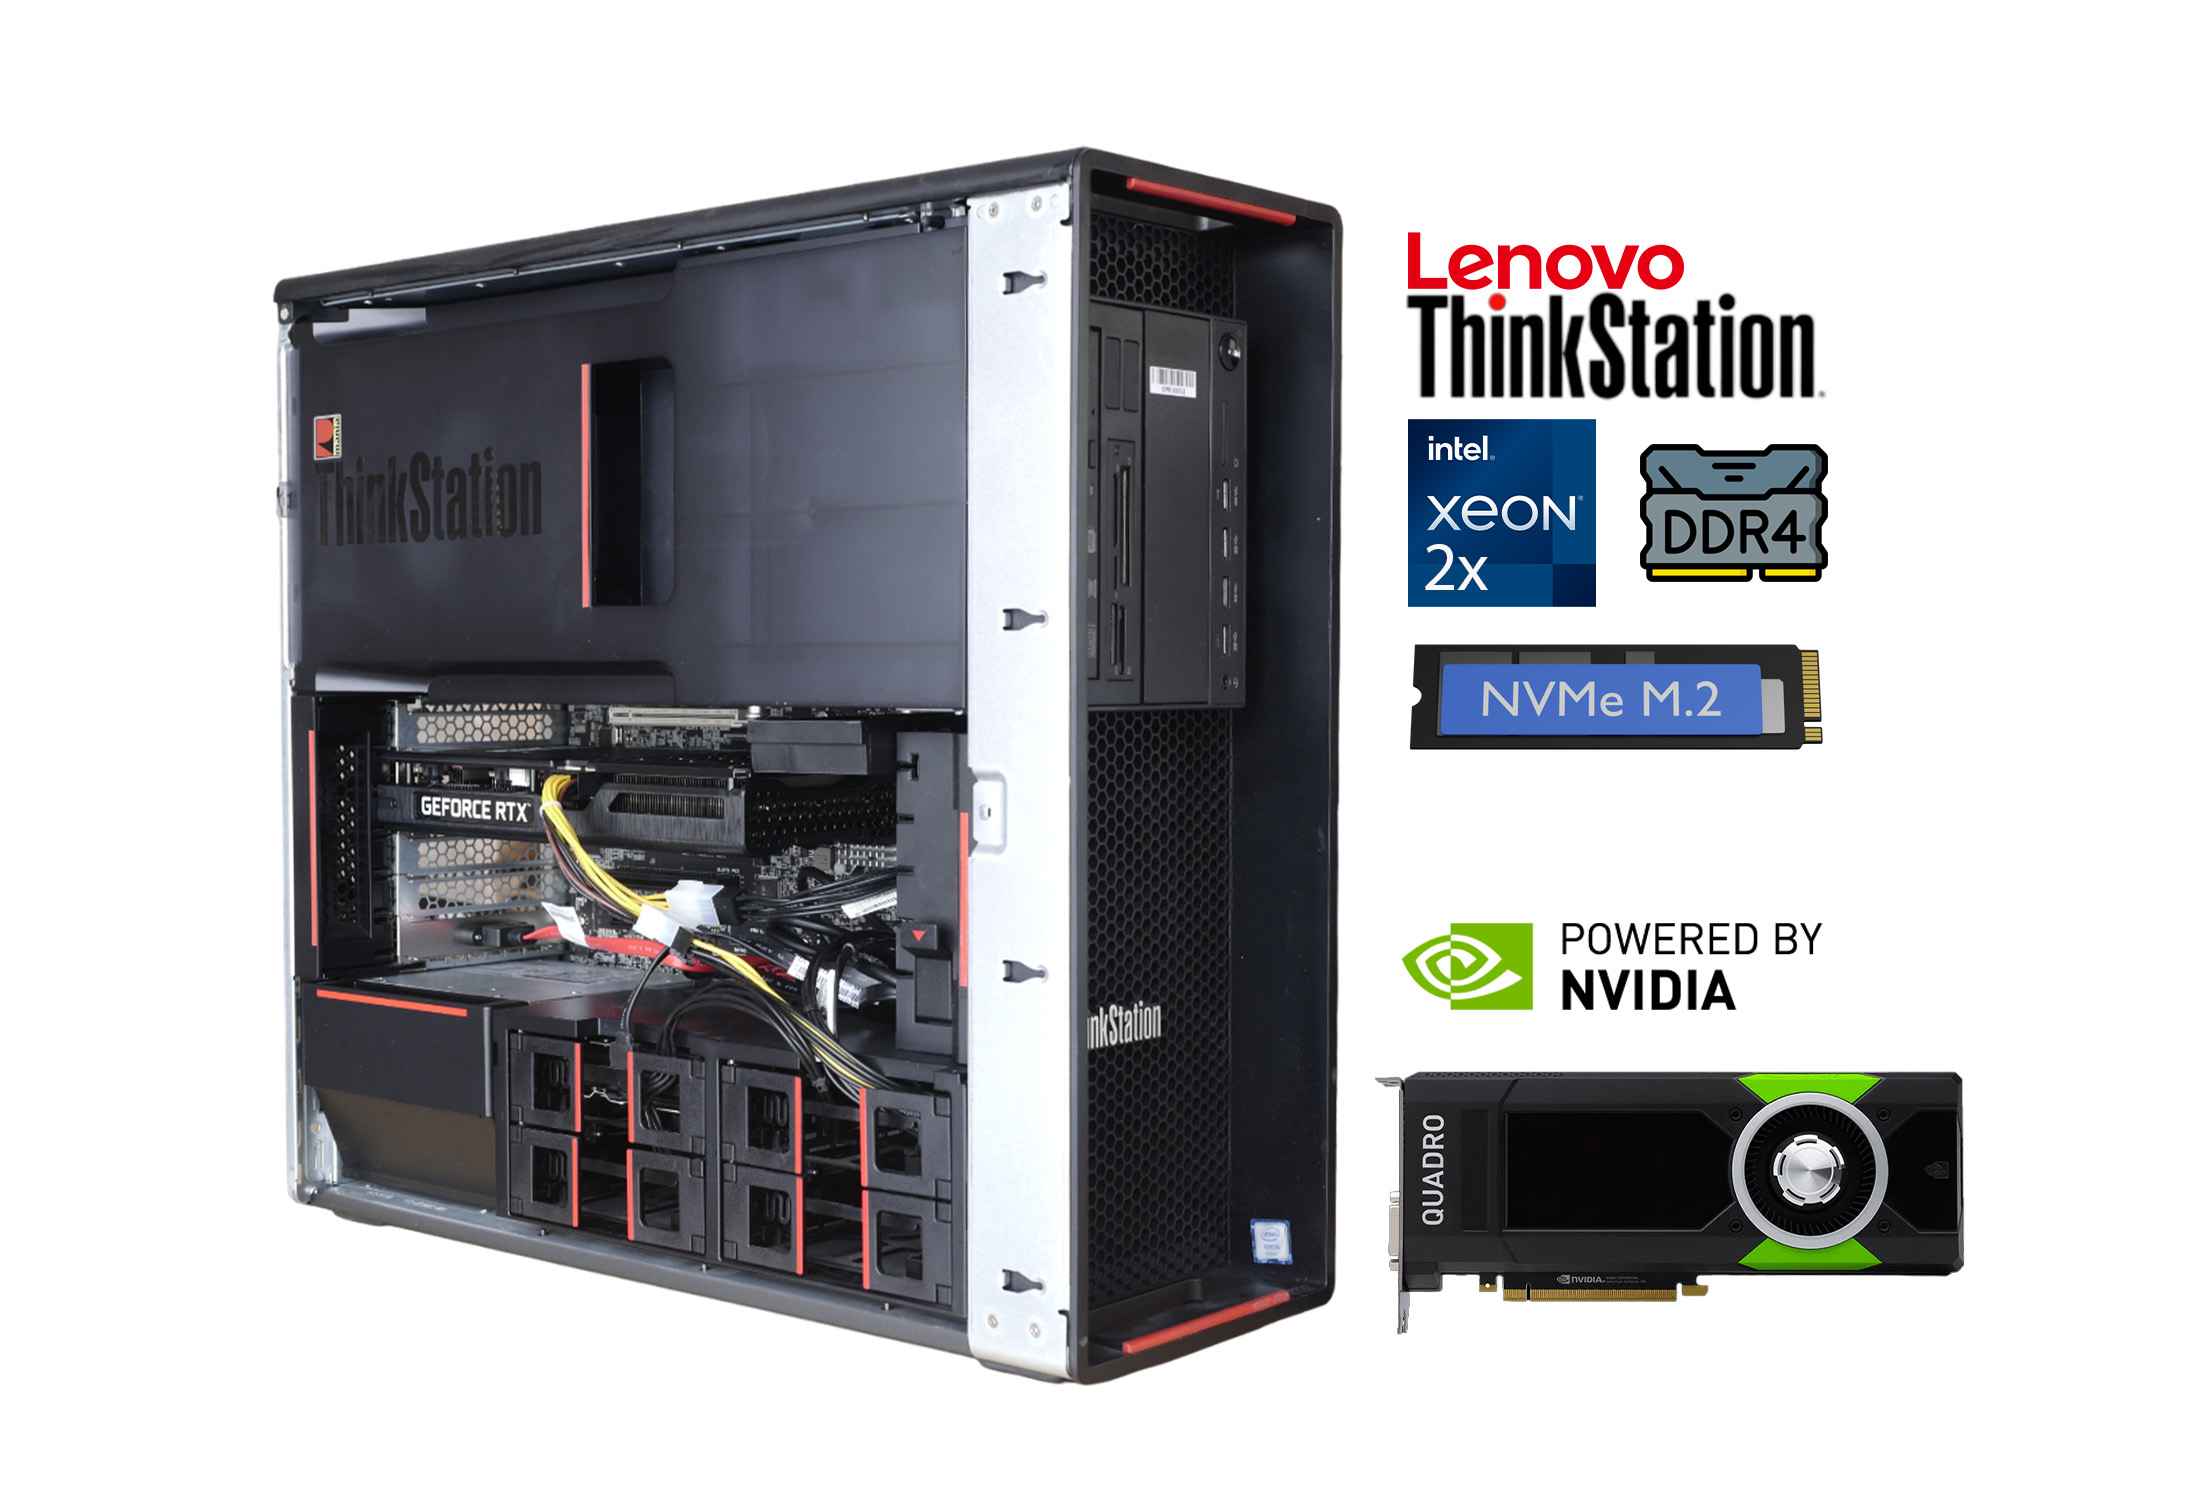 Lenovo Thinkstation P700 2x Xeon E5-2690v3 DDR4 NVMe Quadro P2000